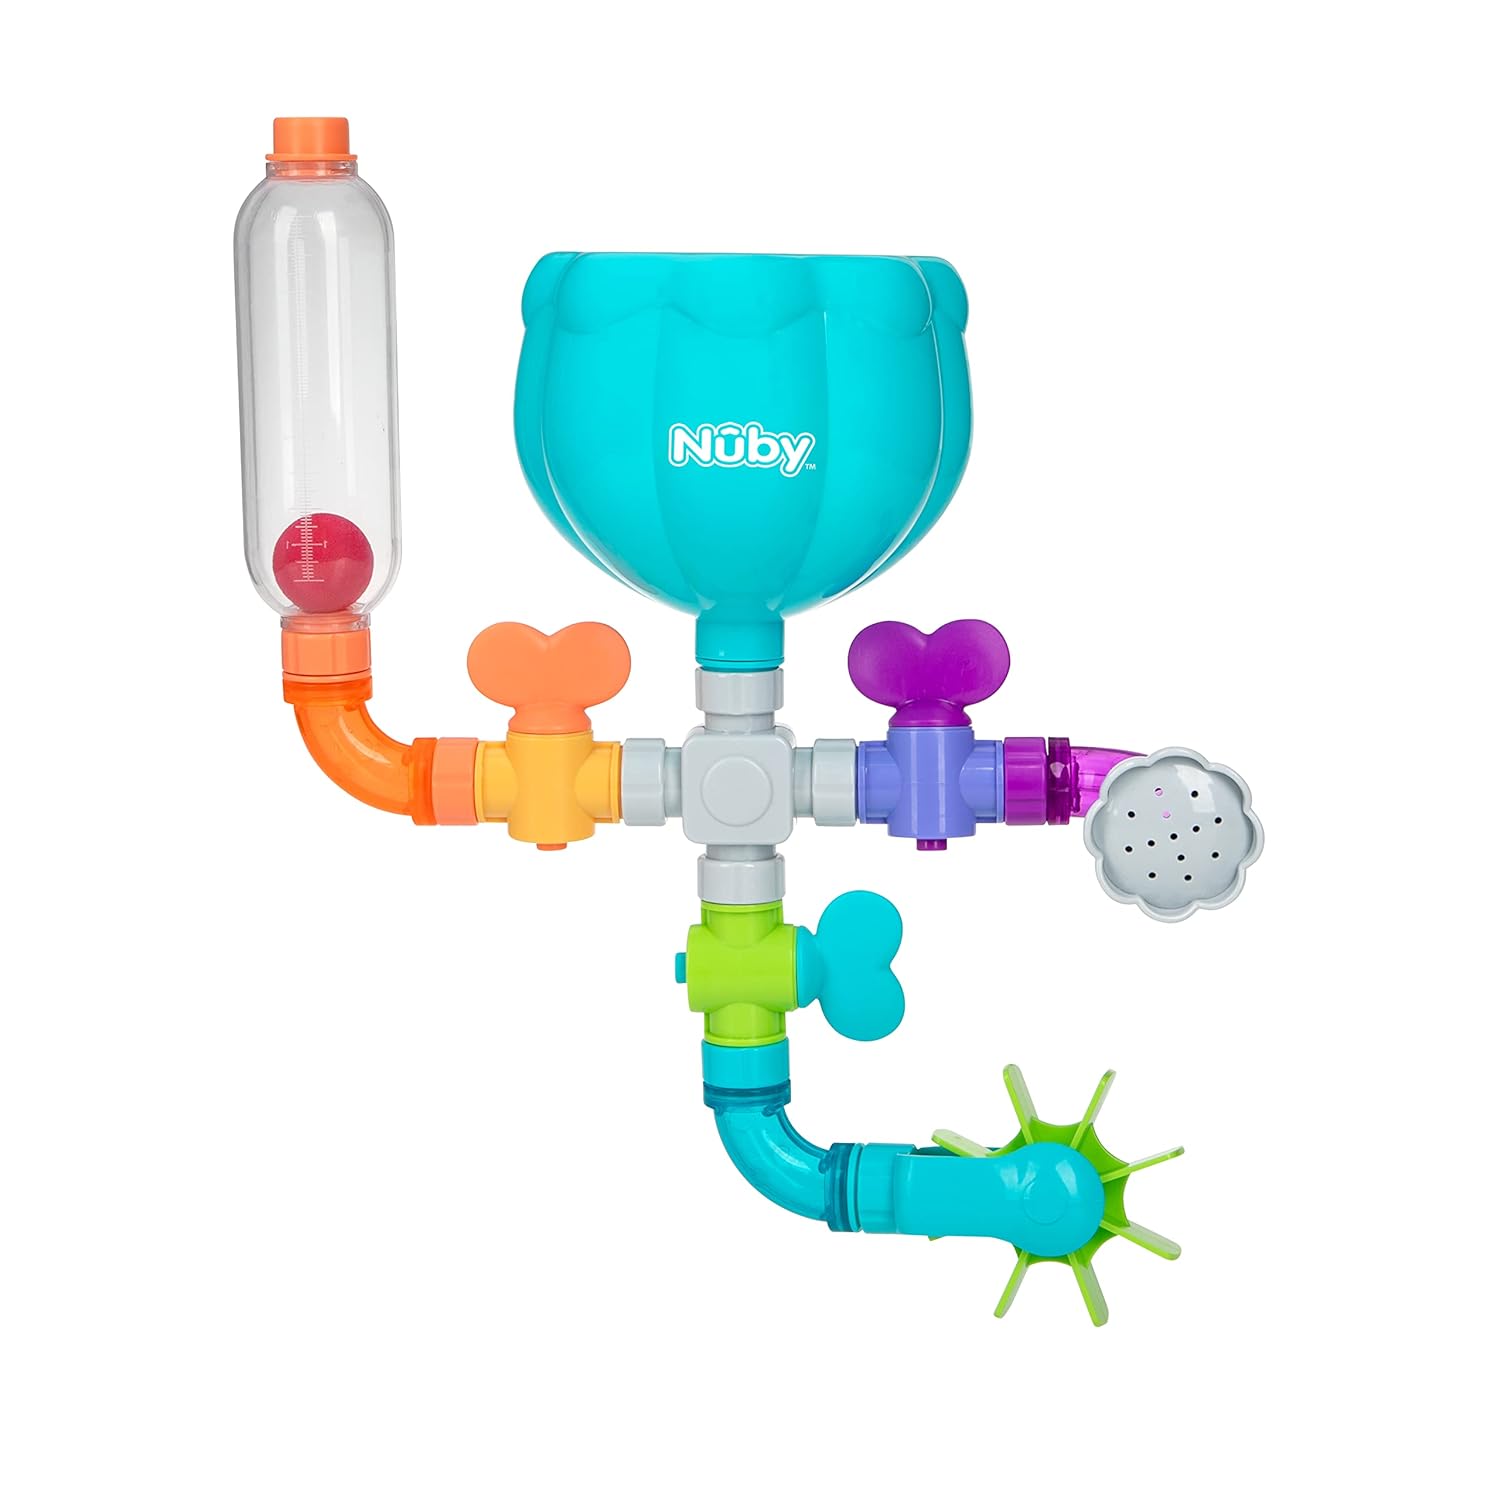 Nuby Wacky Waterworks Pipes Bath Toy Review